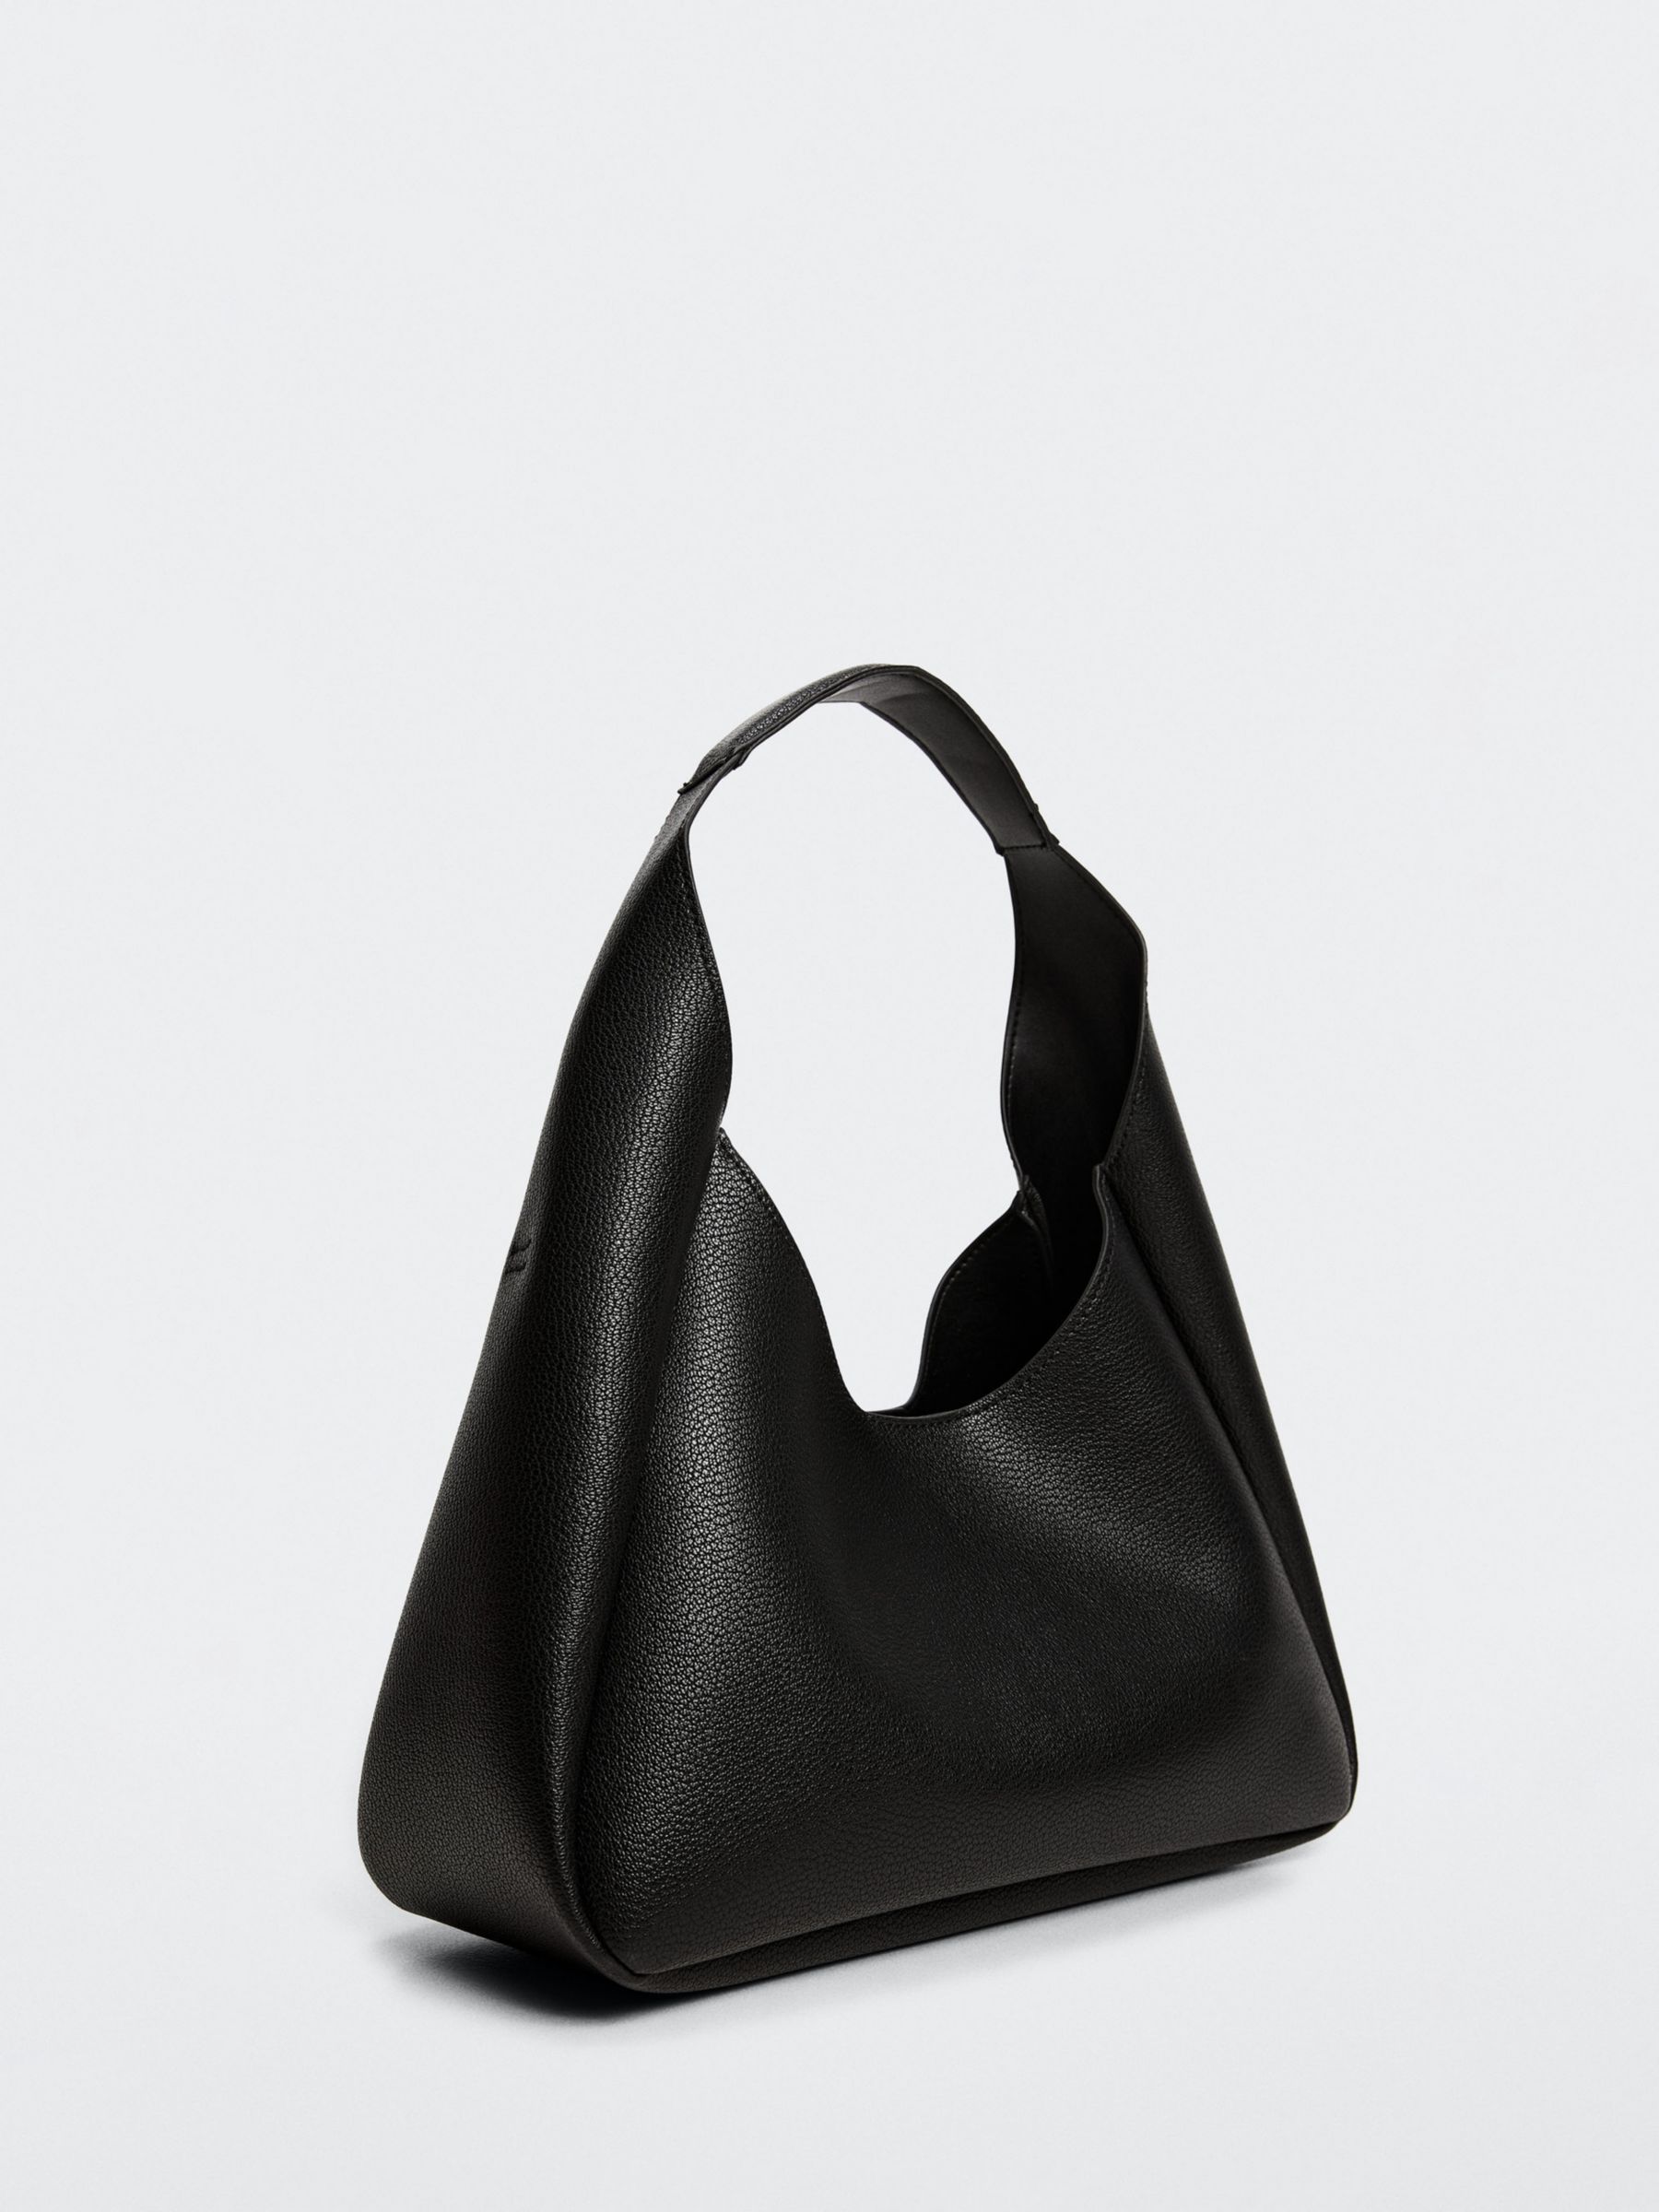 Mango Daniela Slouch Grab Bag, Black at John Lewis & Partners